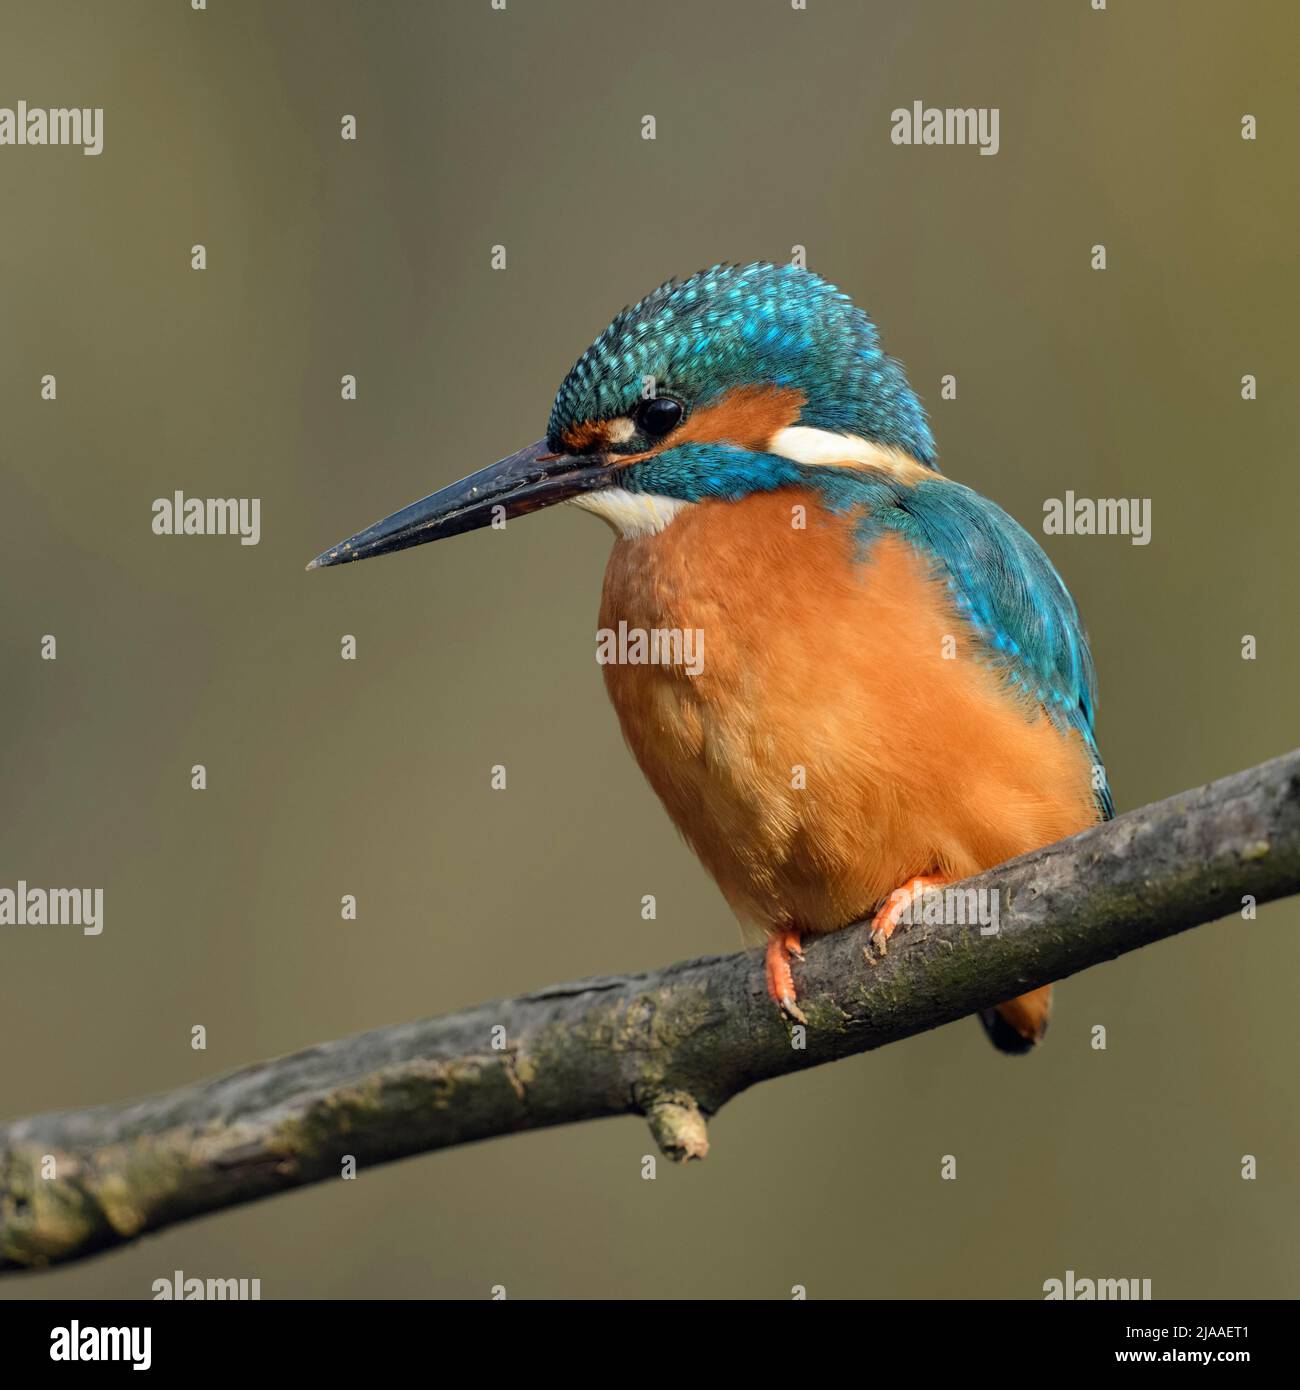 Kingfisher commun / Optimize ( Alcedo atthis ), homme oiseau avec la saleté / boue / masse sur son bec après avoir creusé son terrier de nidification, de la faune, de l'Europe. Banque D'Images